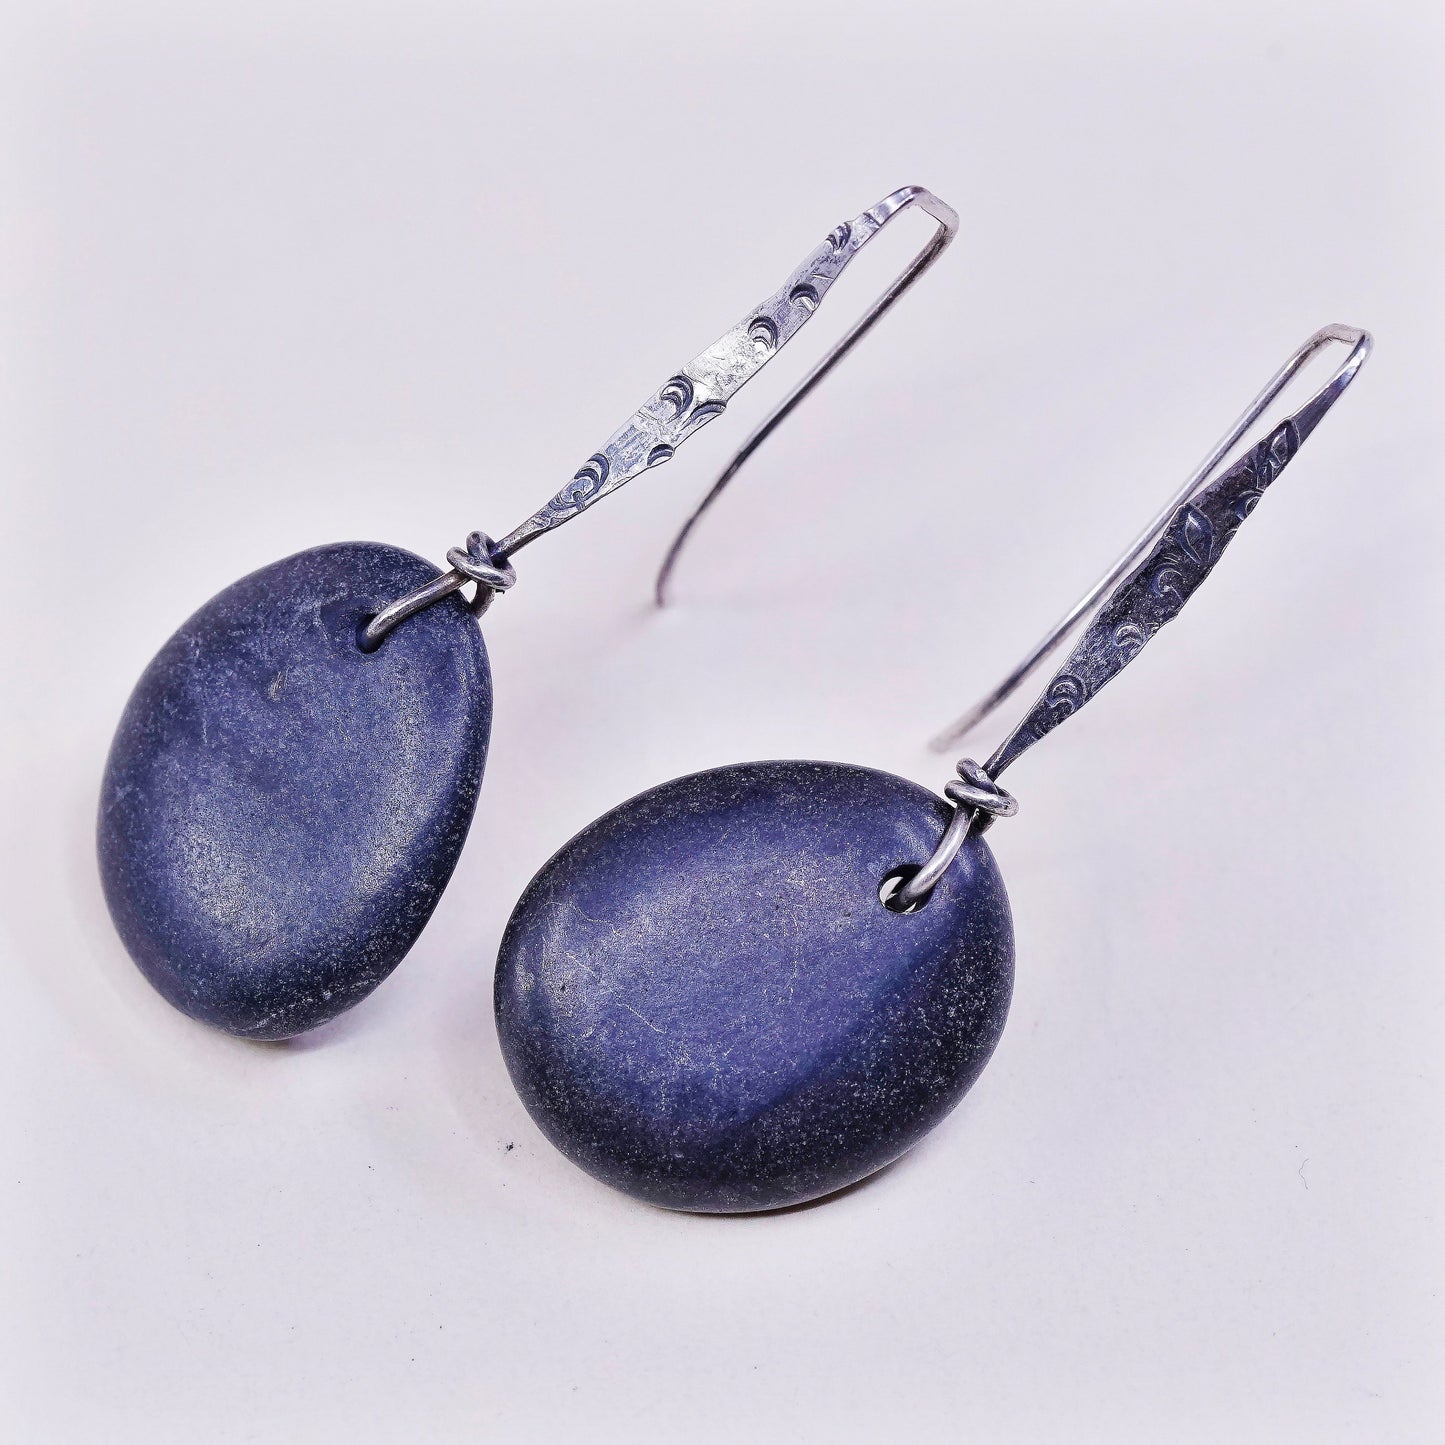 vtg sterling silver handmade earrings, 925 w/ pebble stone Dangles